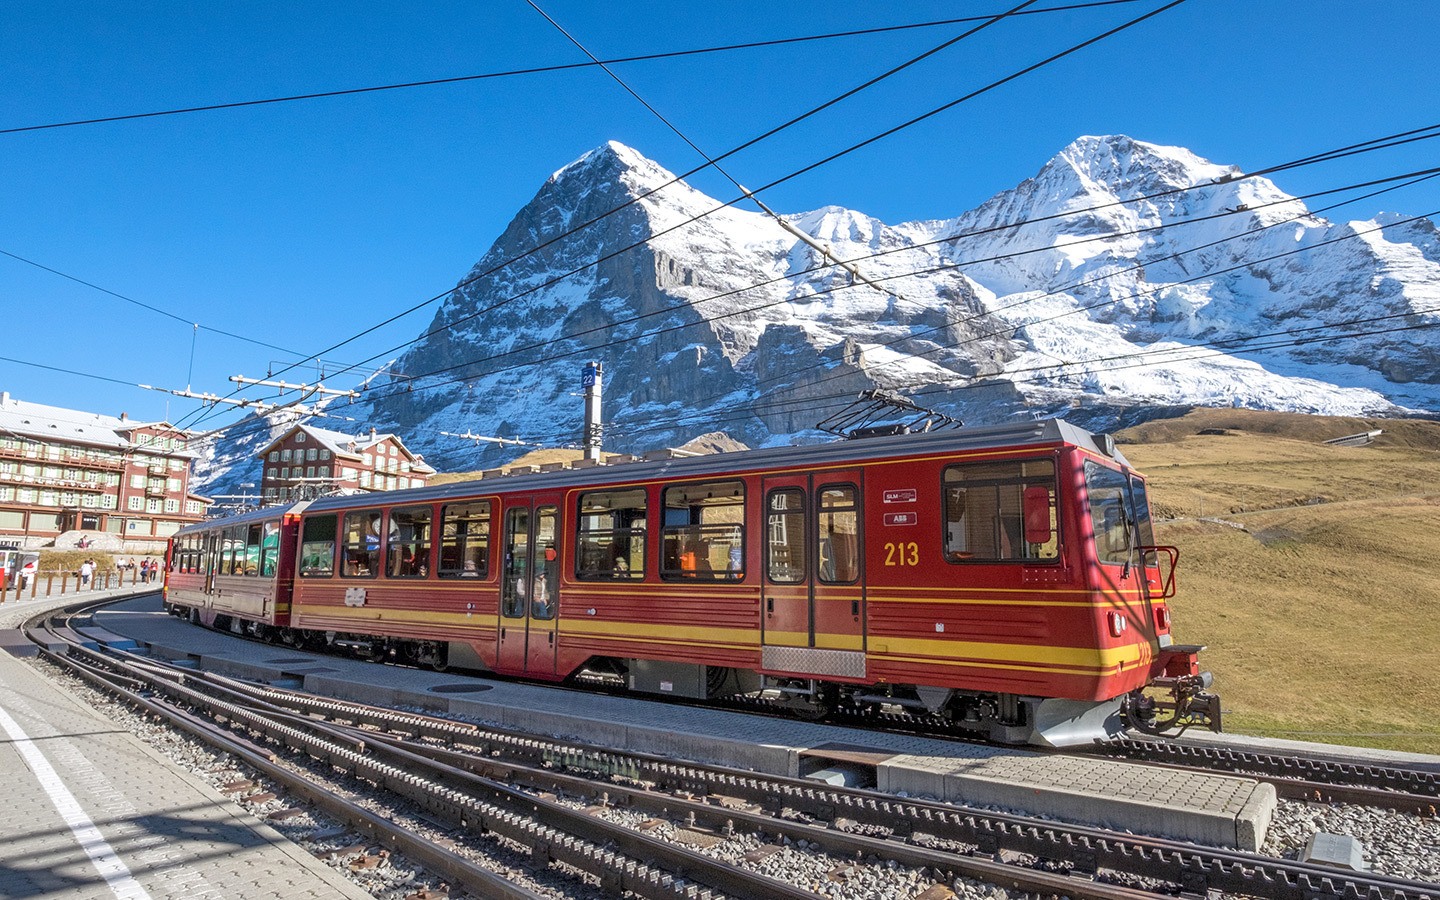 Europe by train: Swiss mountain railway at Kleine Scheidegg